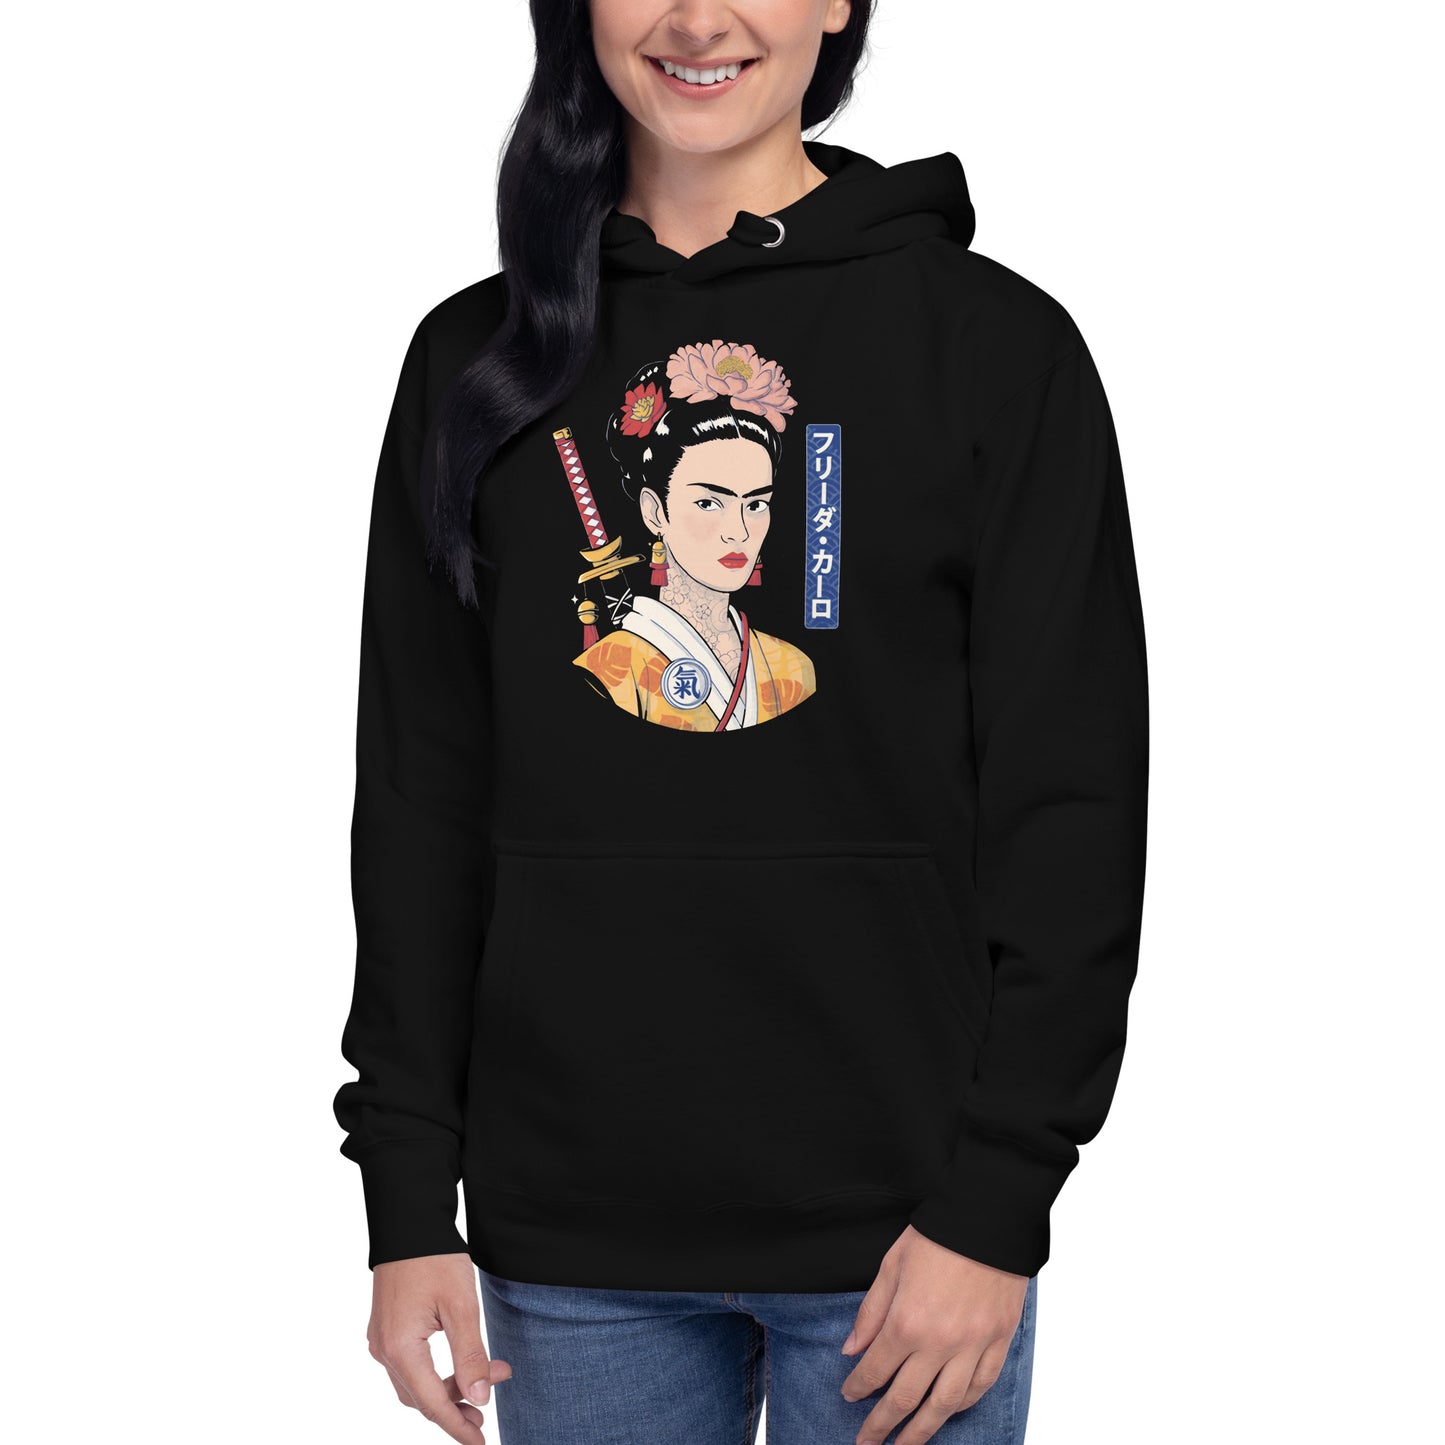 Hoodie de Frida Samurai, Descubre calidad excepcional y estampados duraderos. Encuentra estilo y orgullo en cada prenda. Compra ahora!